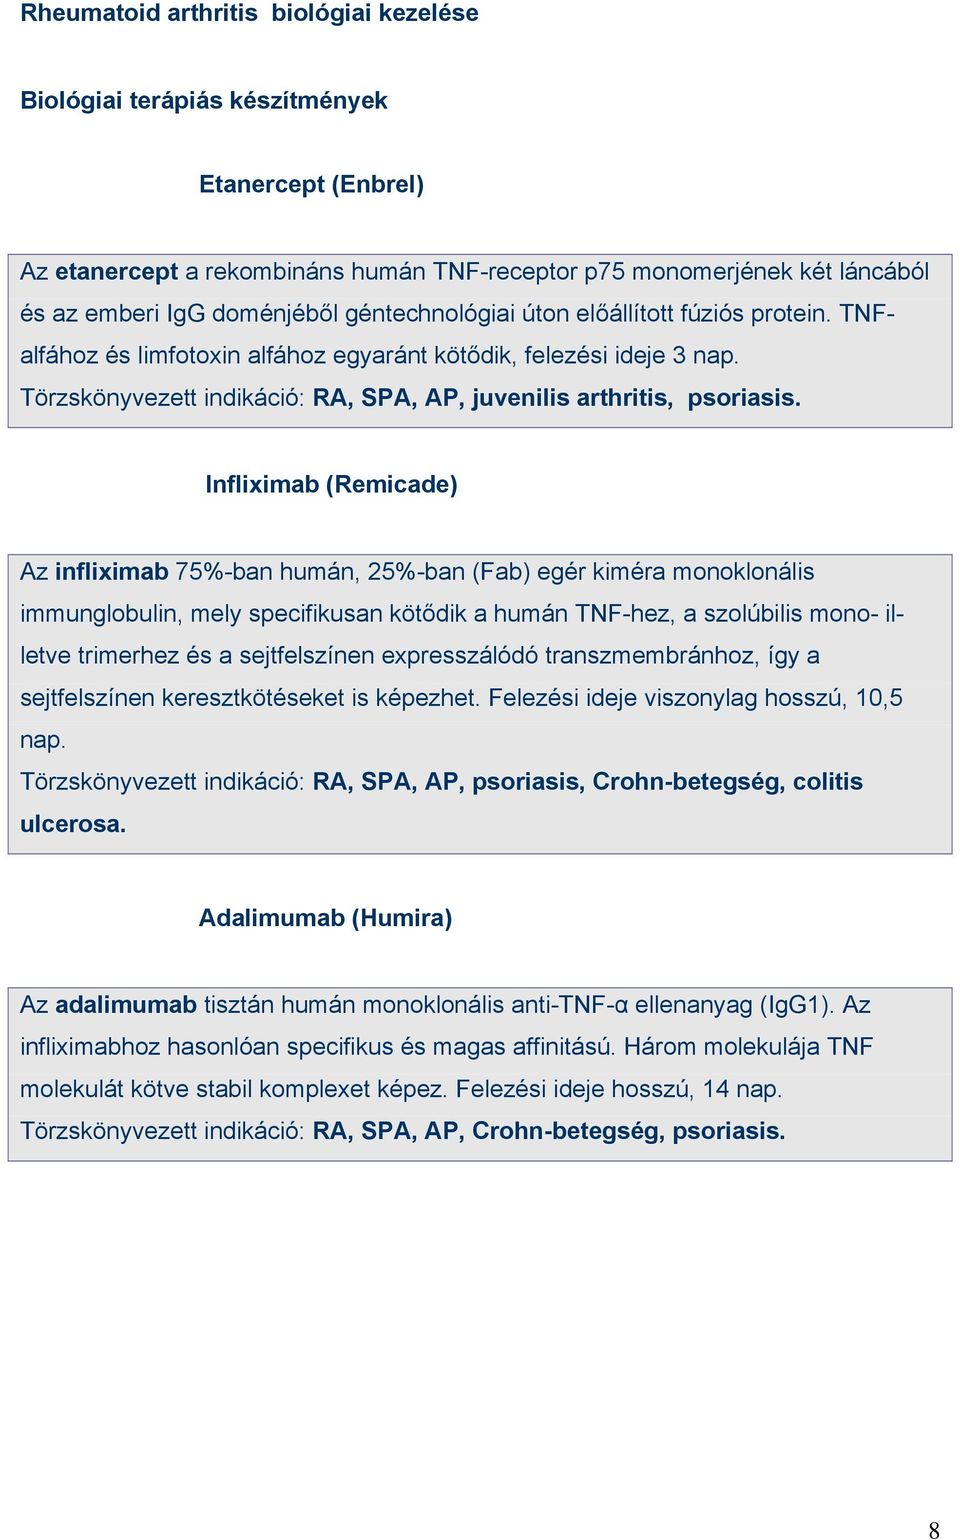 Infliximab (Remicade) Az infliximab 75%-ban humán, 25%-ban (Fab) egér kiméra monoklonális immunglobulin, mely specifikusan kötődik a humán TNF-hez, a szolúbilis mono- illetve trimerhez és a